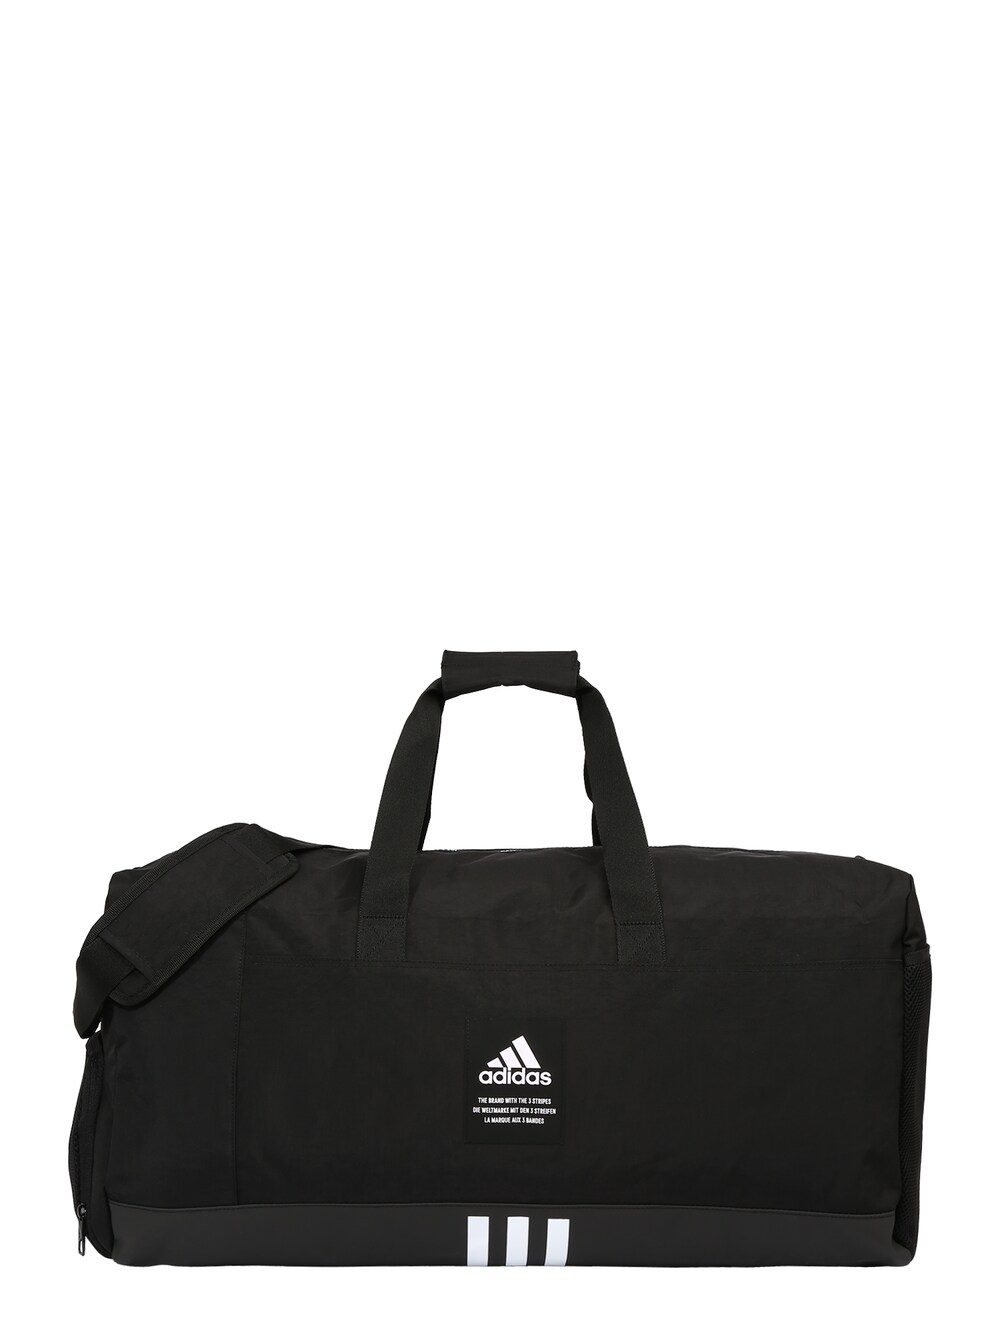 Спортивная сумка Adidas 4Athlts Large Duffel, черный